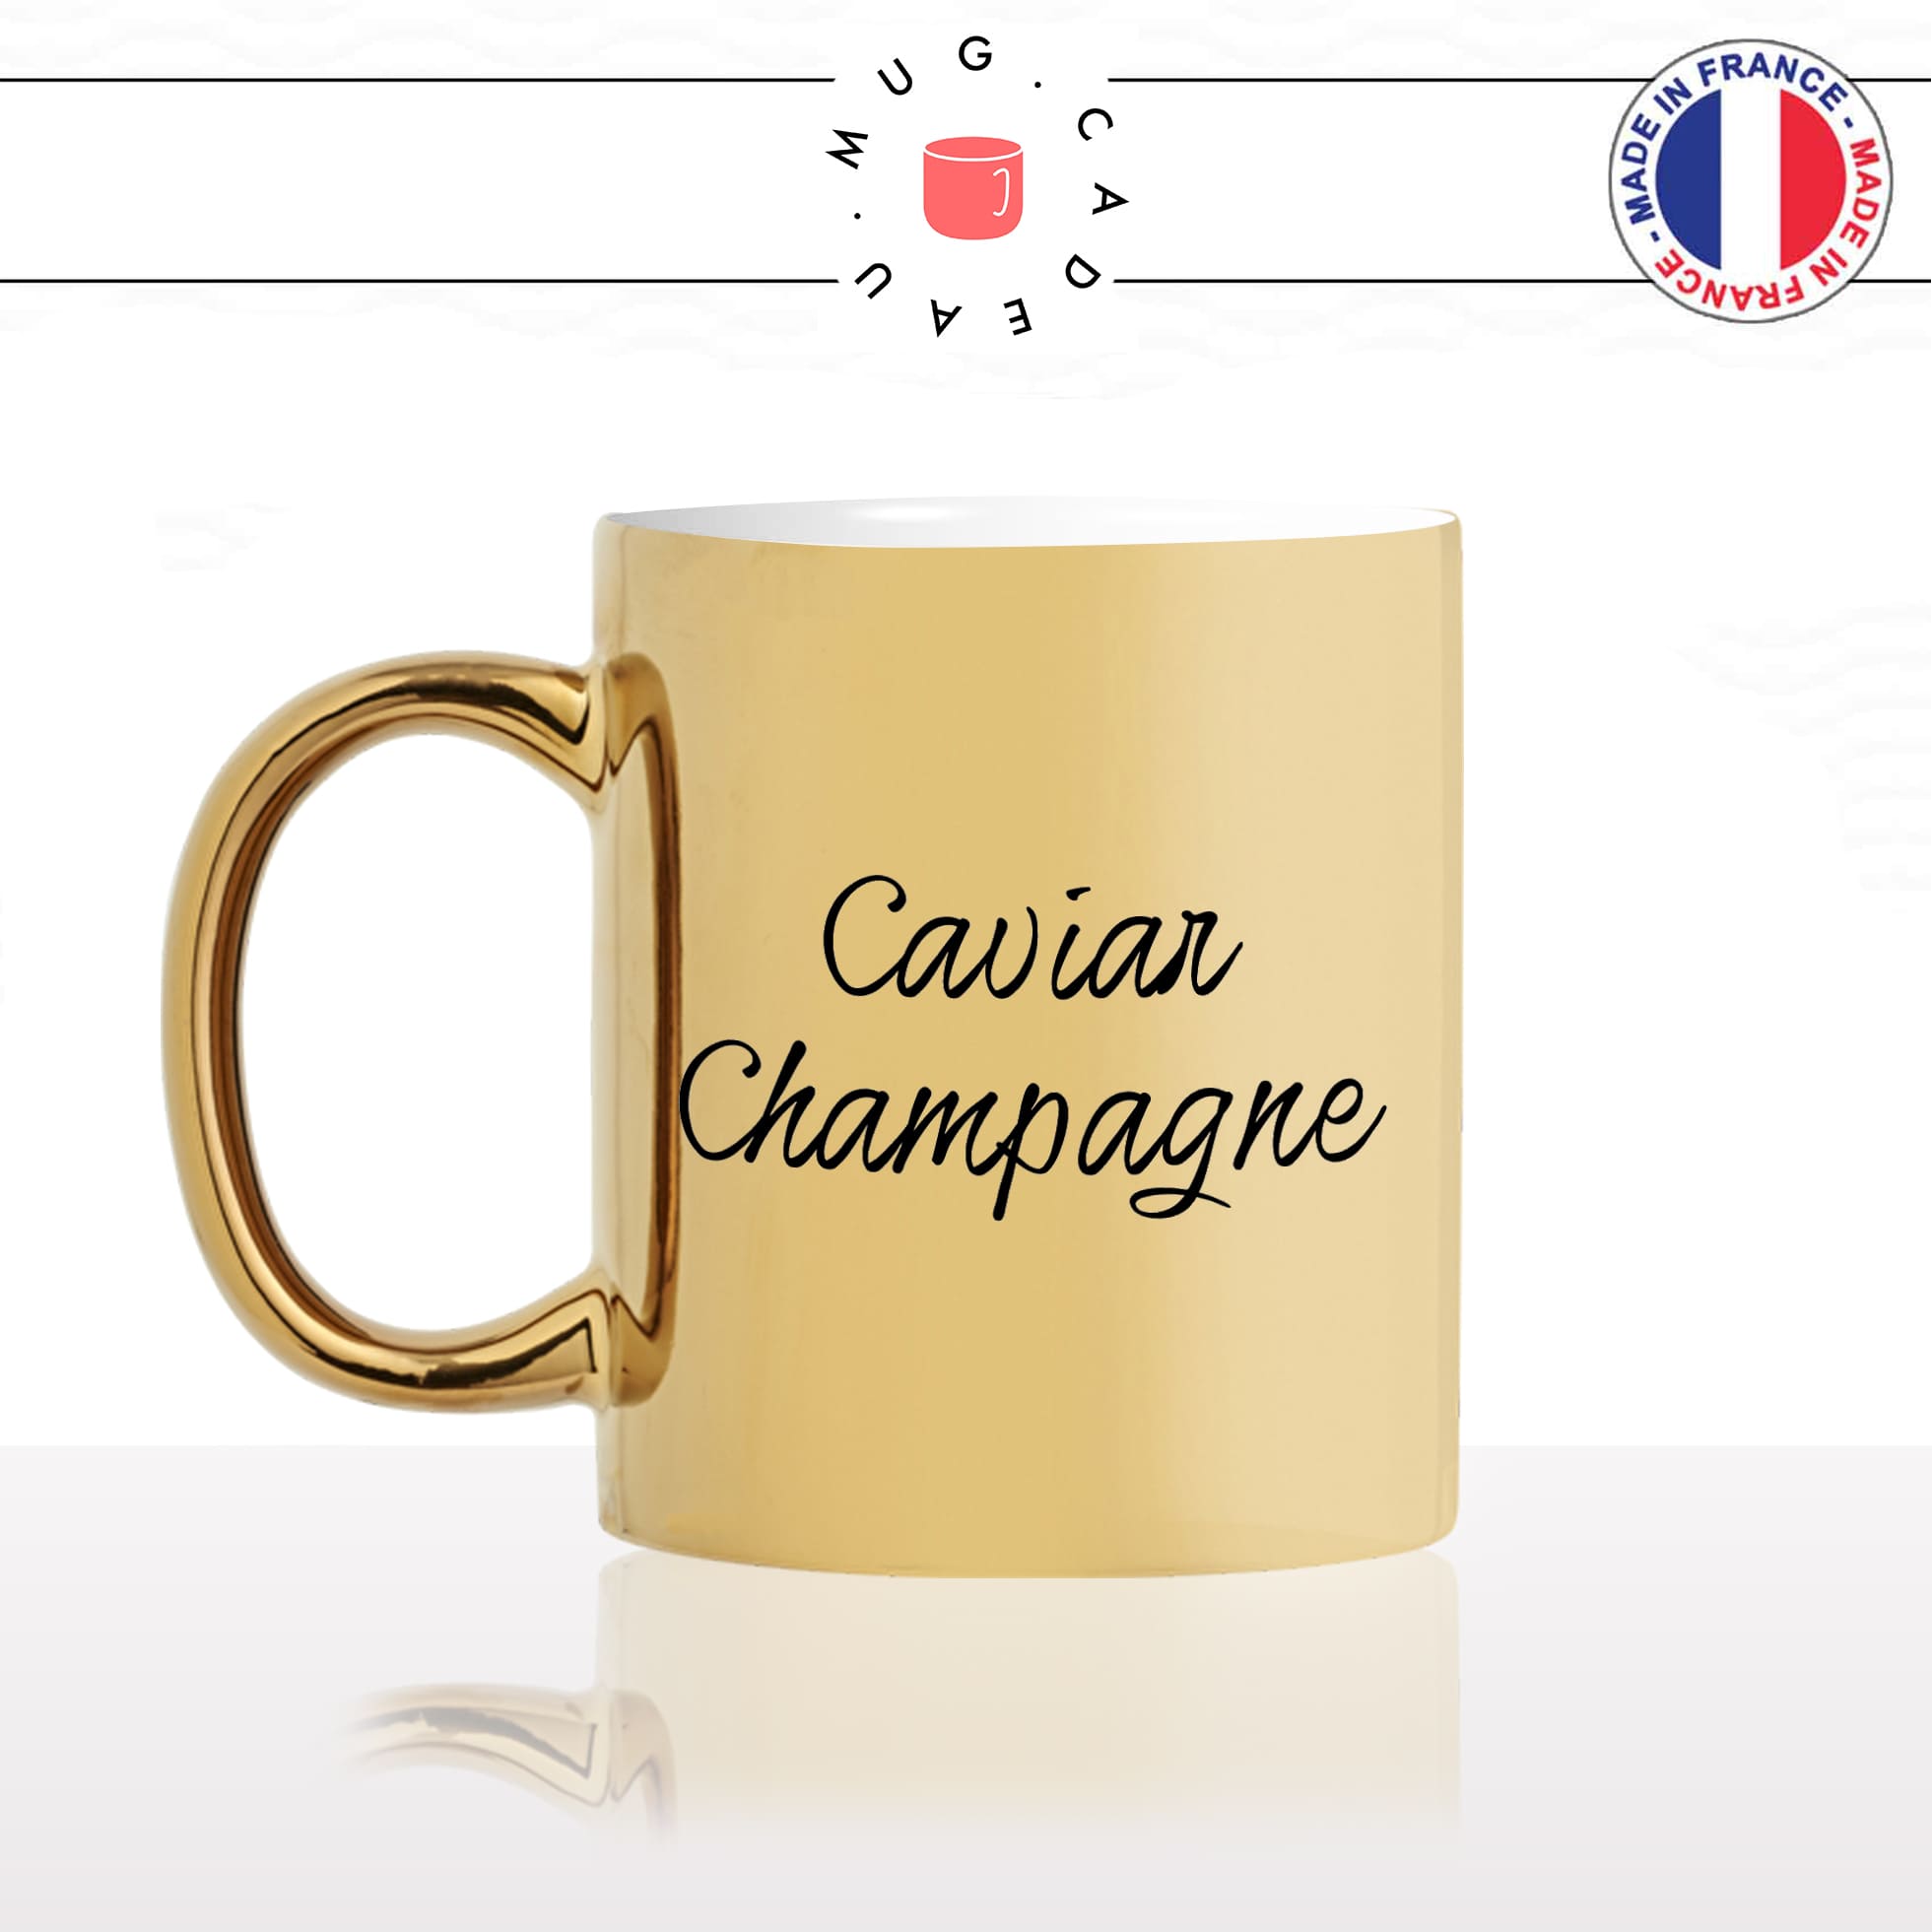 mug-tasse-or-doré-gold-unique-caviar-champagne-riche-apéro-homme-femme-vacances-humour-fun-cool-idée-cadeau-original-personnalisé